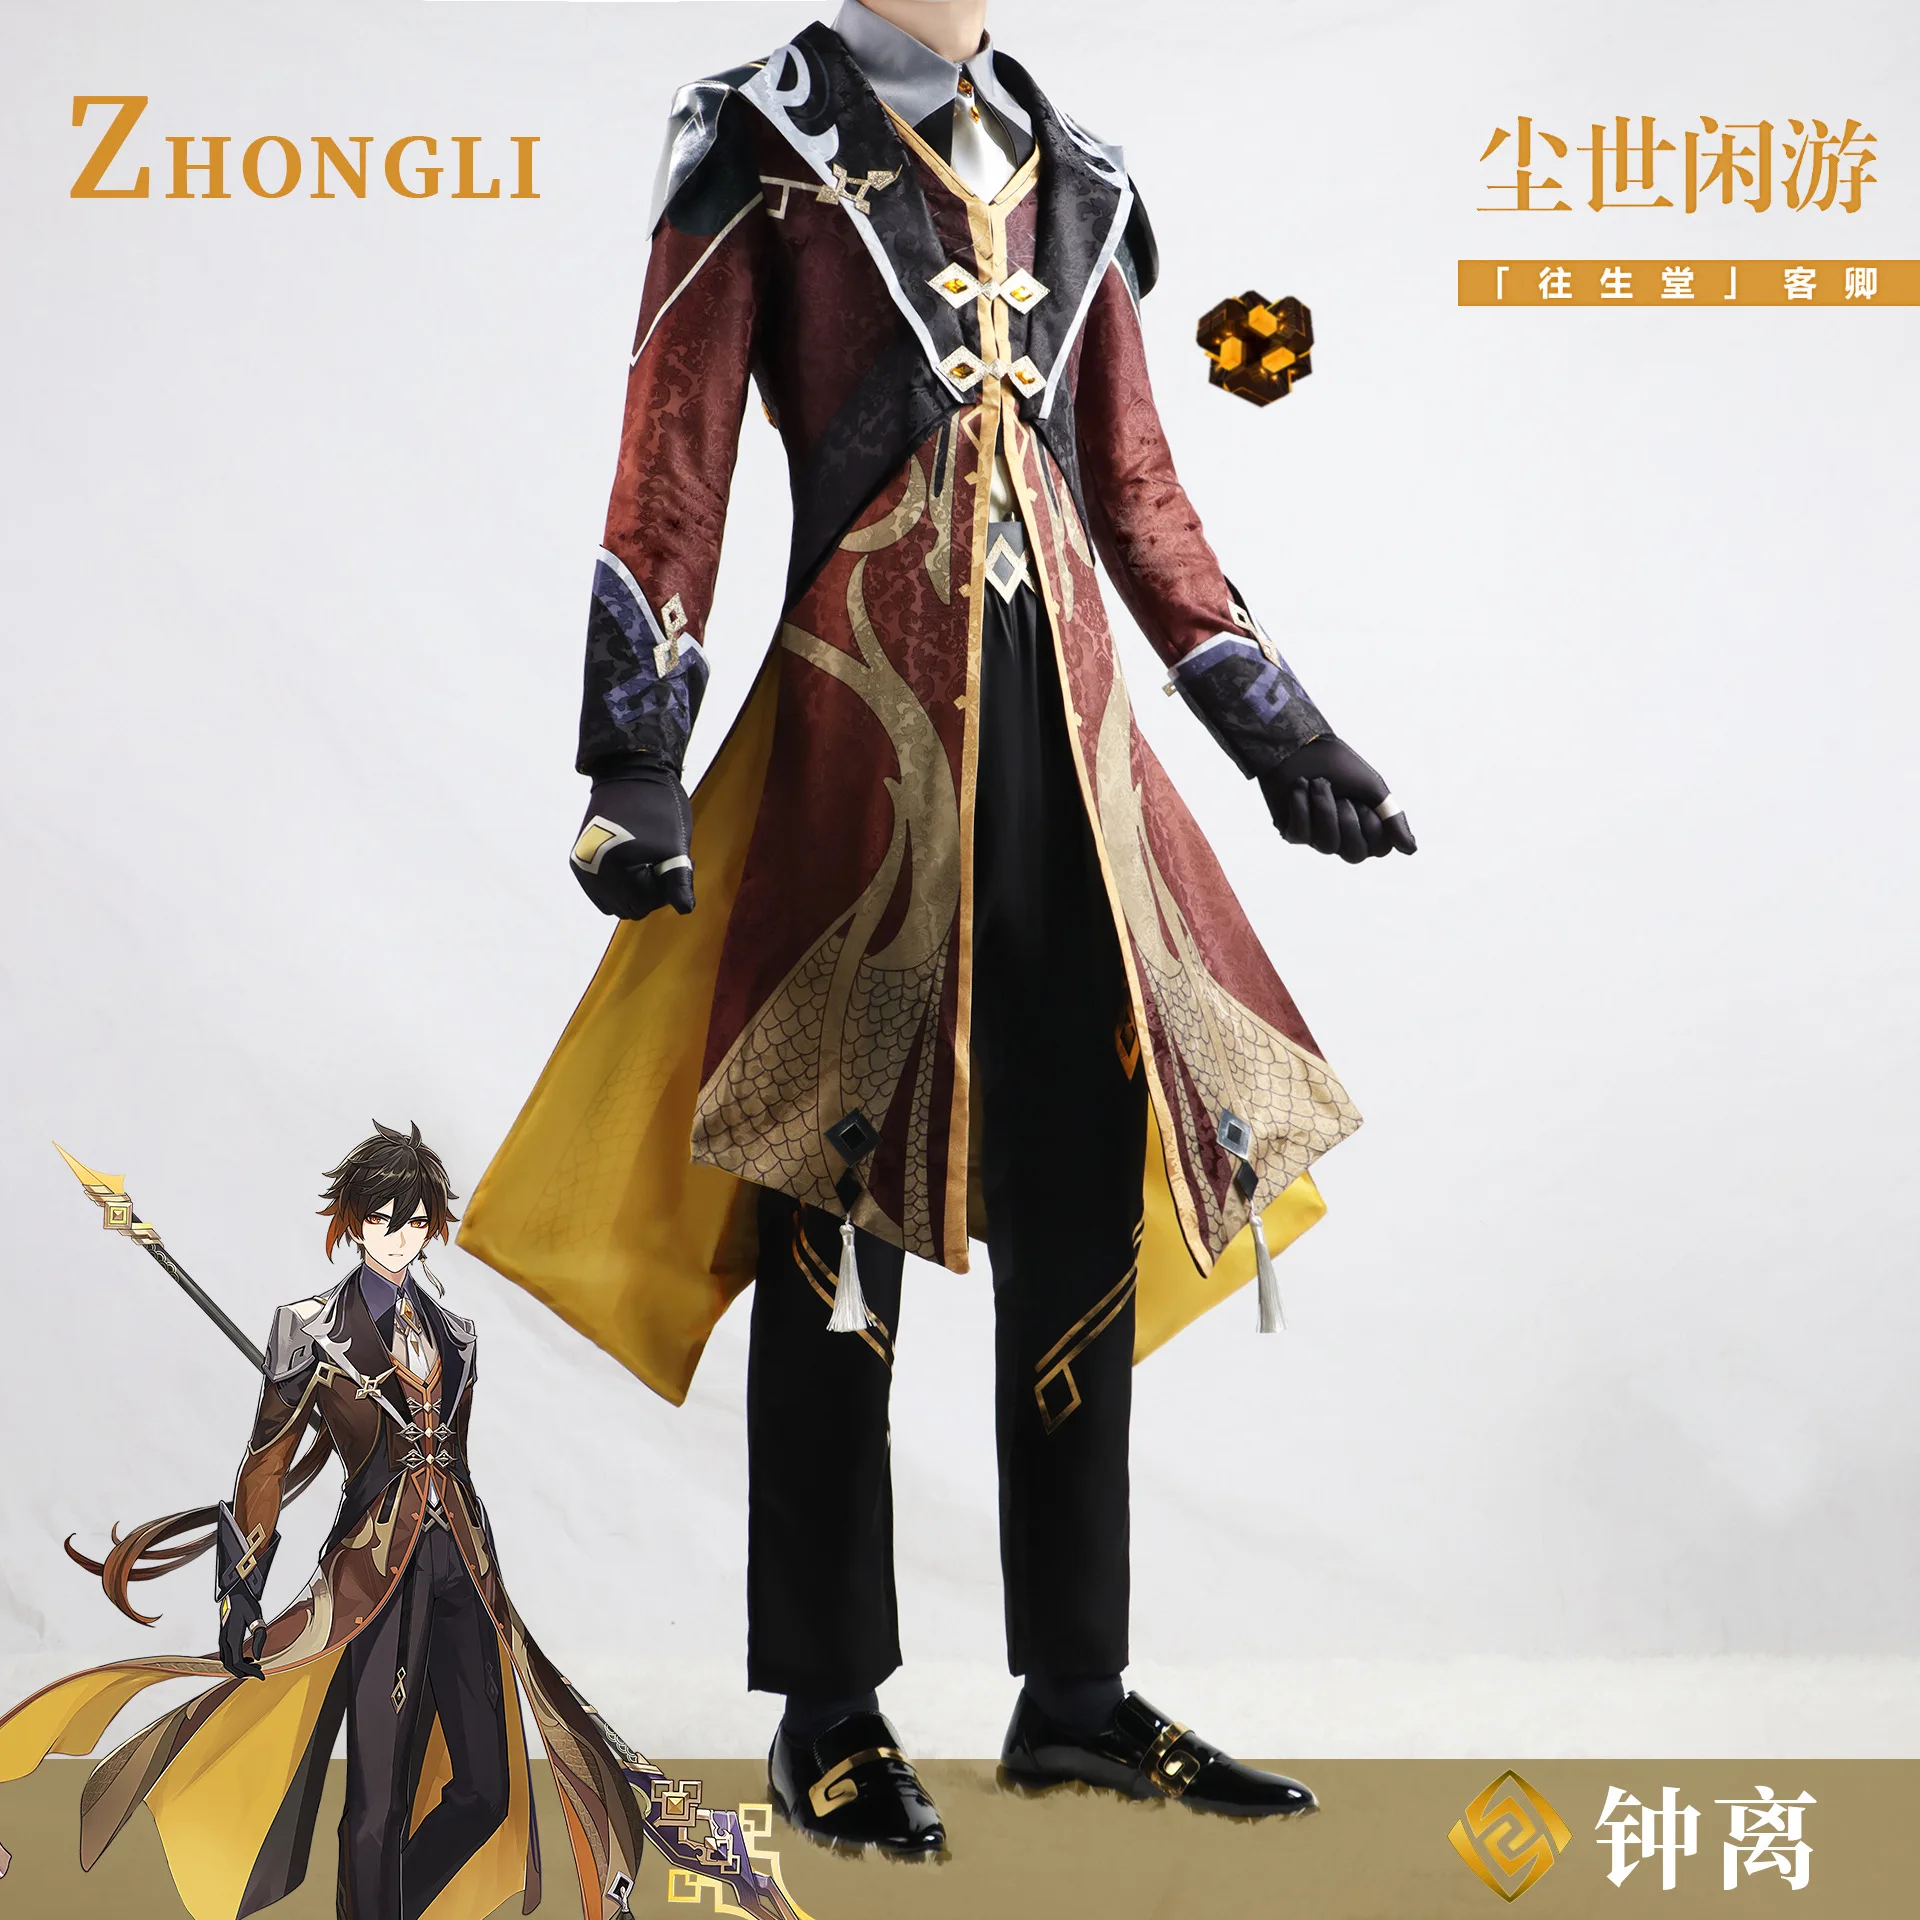 

Zhongli косплей игра геншин ударопрочный костюм в наличии Geo Archon Morax Zhongli Мужская ролевая игра униформа Хэллоуин карнавал